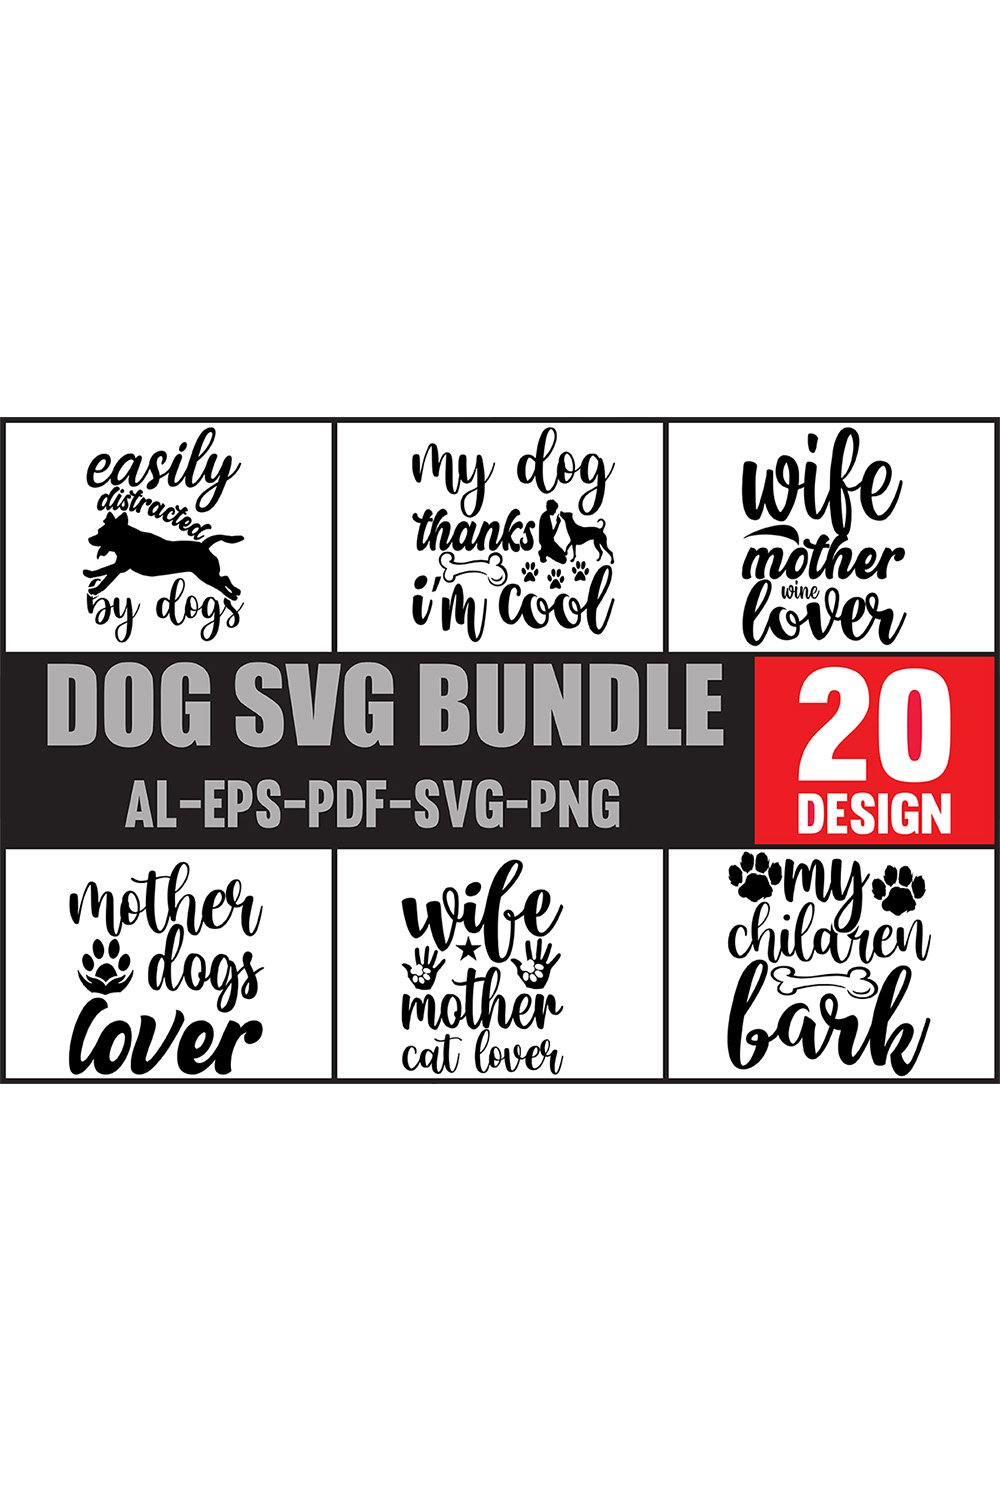 Dog svg bundle of 20 designs.